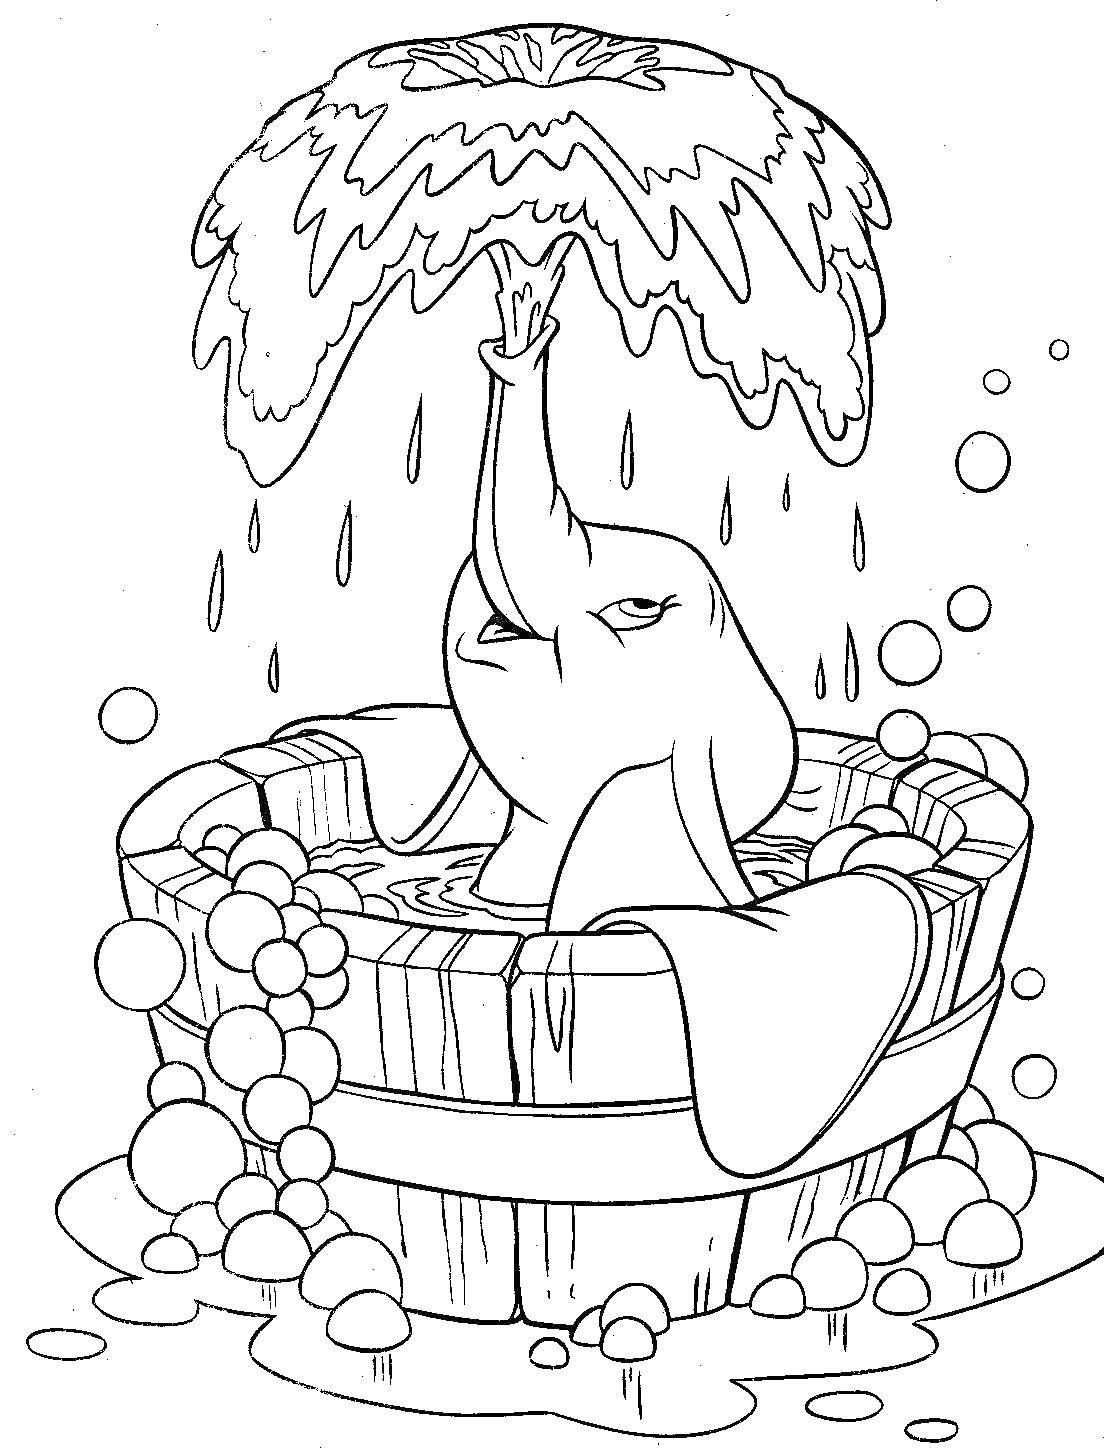 Слонёнок Дамбо принимает ванну в ведре с мыльными пузырями и водой, которую он поднимает хоботом